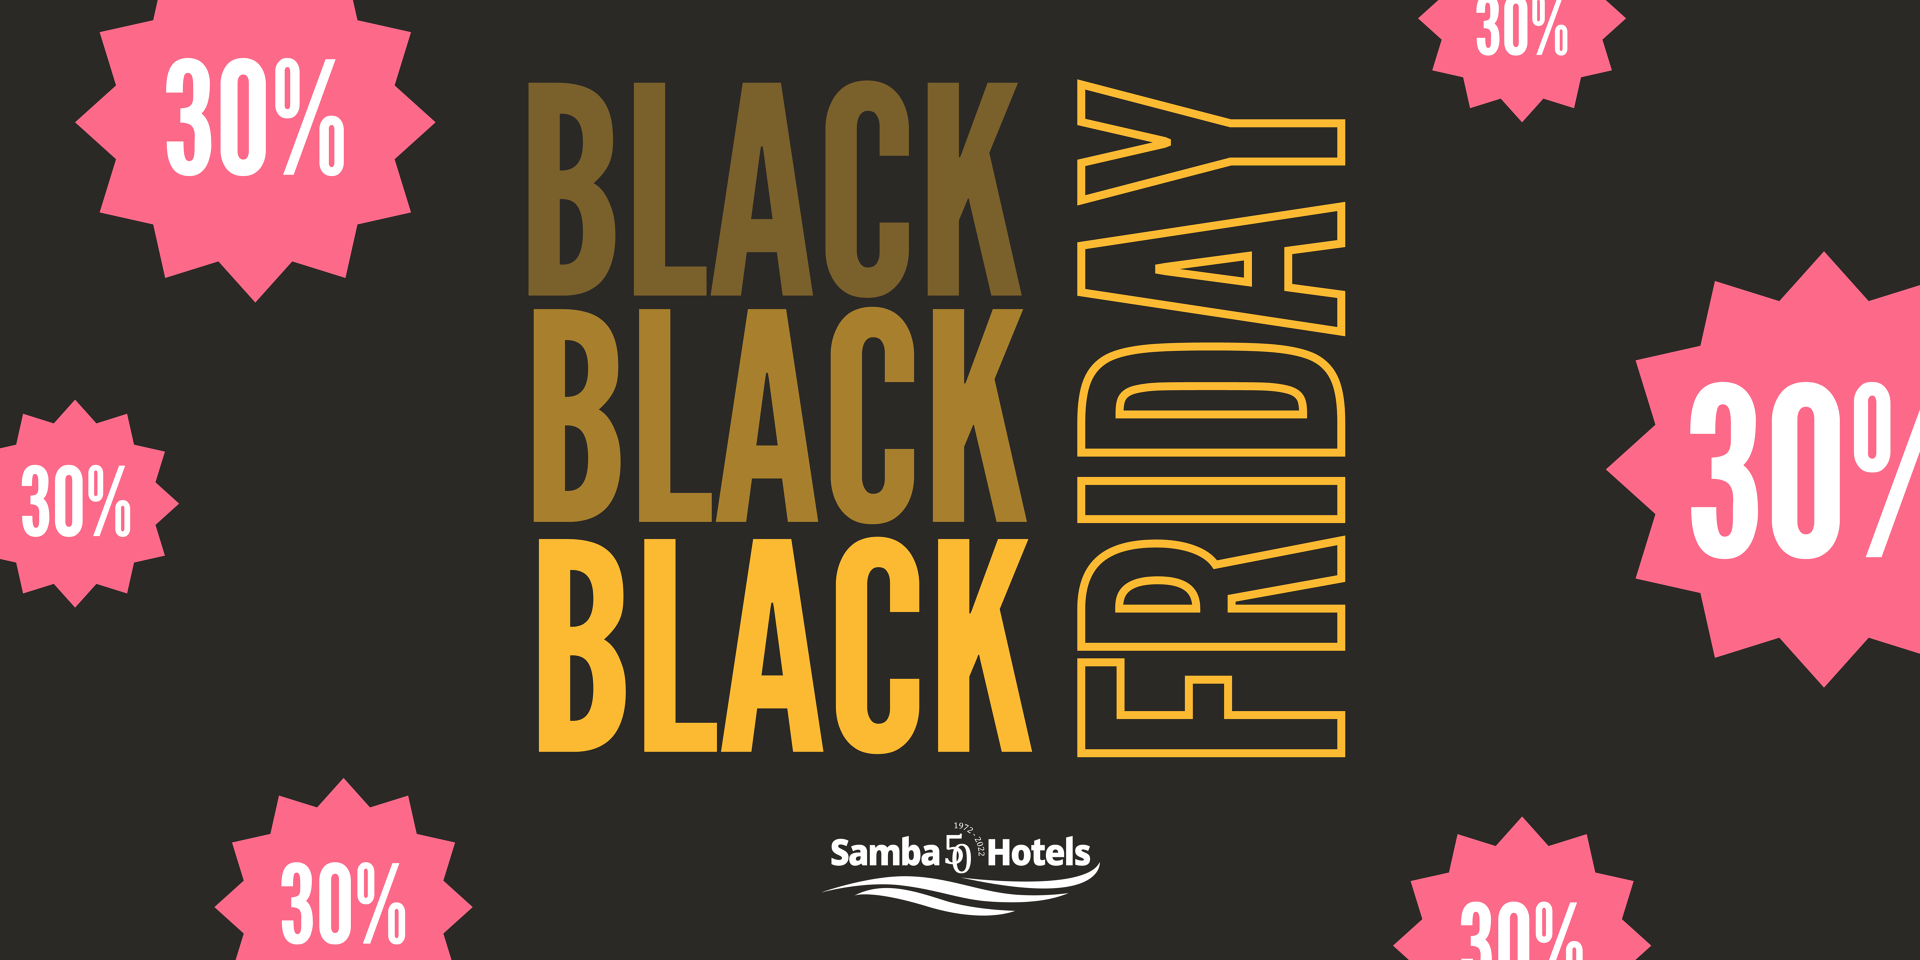 Zaoszczędź 30% na Twoje wakacje korzystając z naszej Promocji Black Friday w Samba Hotels, Lloret de Mar